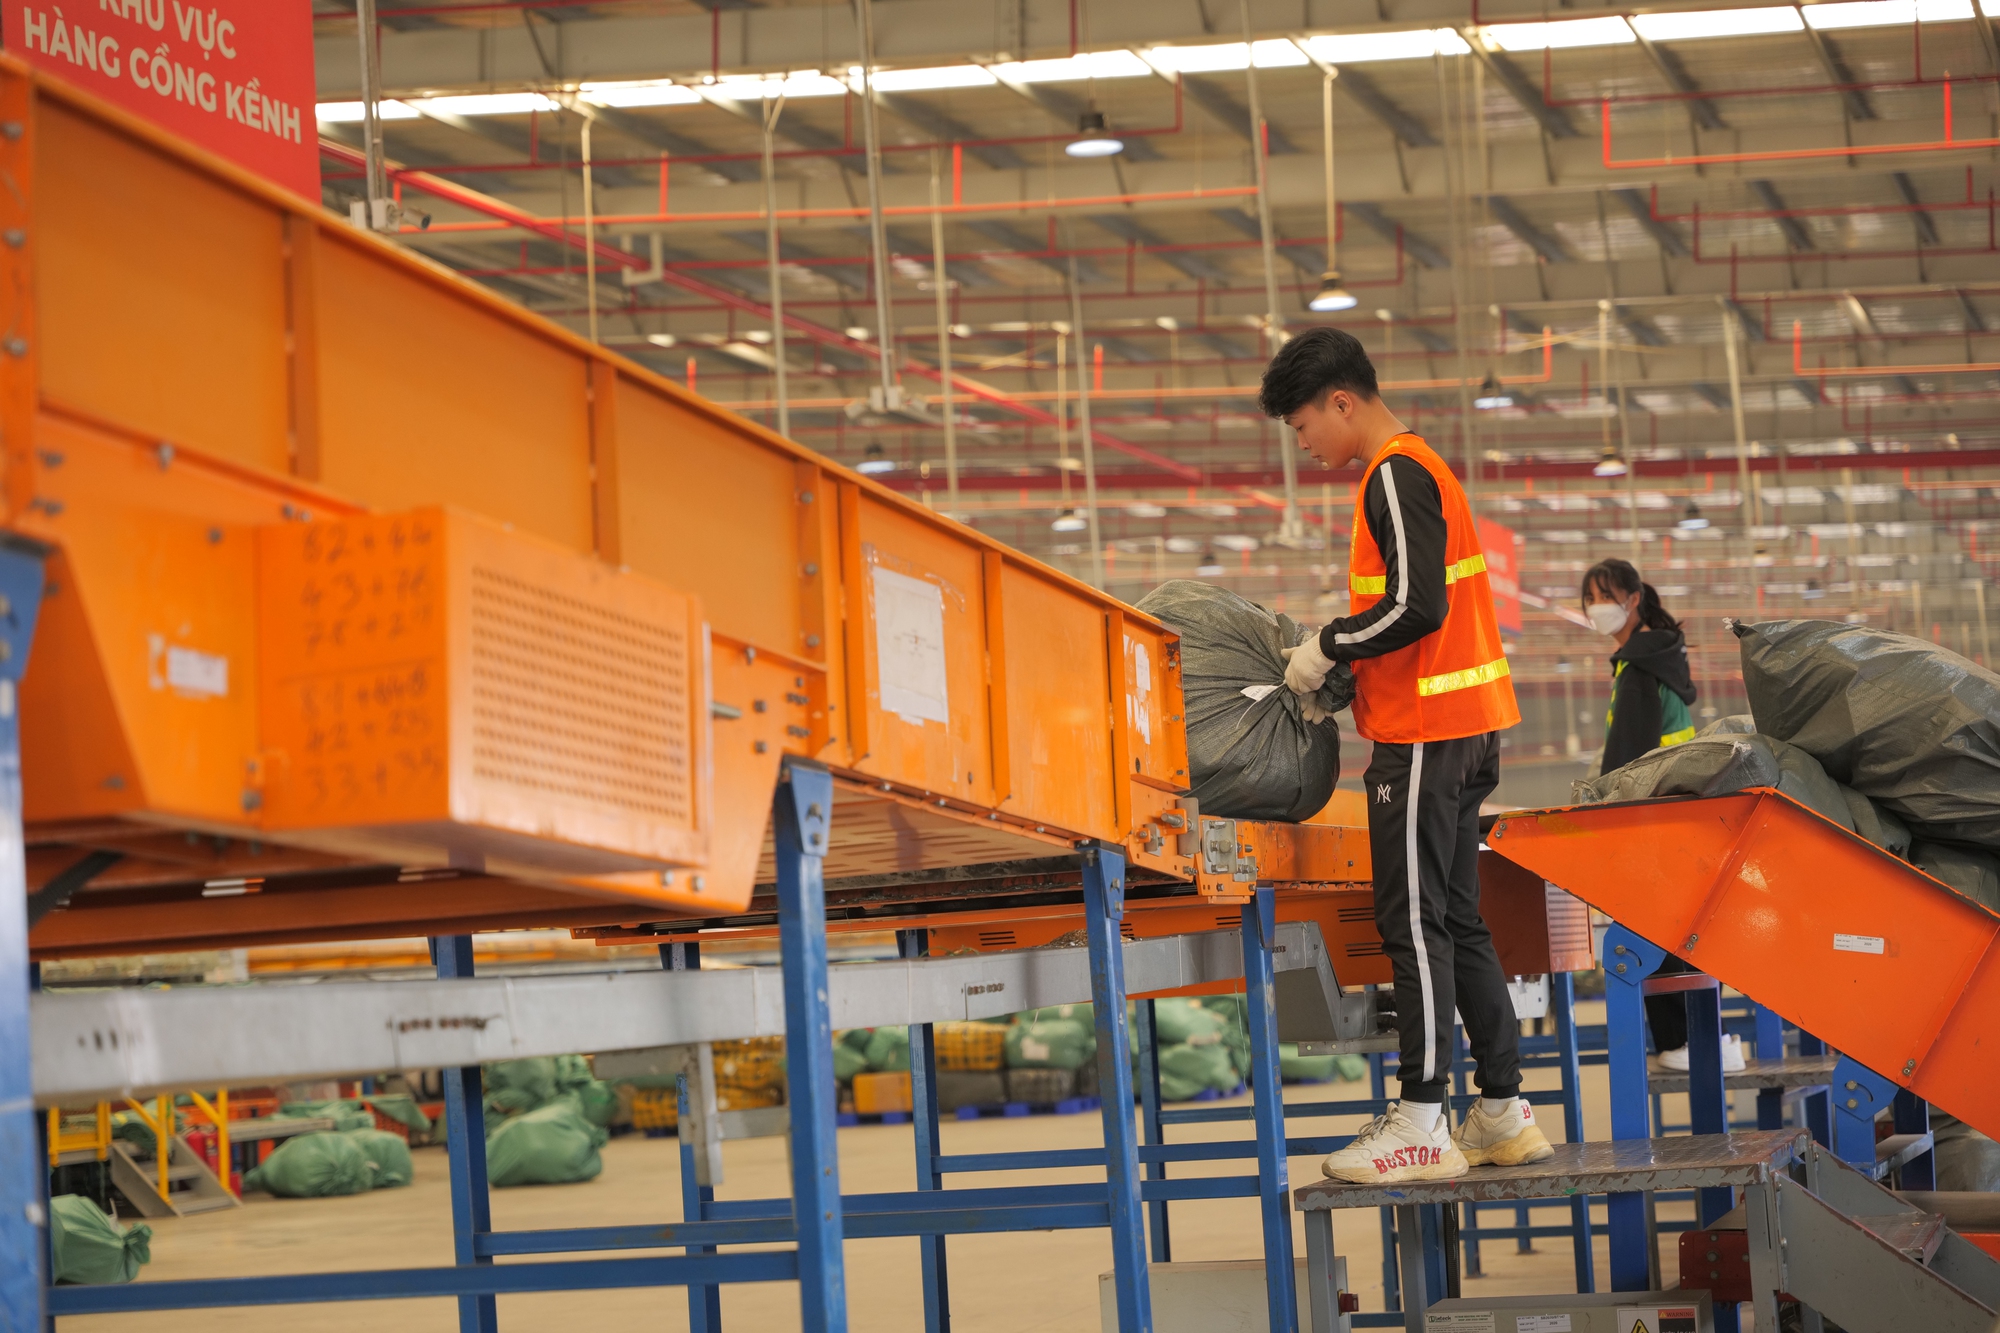 Kho chia chọn triệu USD của GHN tại Hà Nội: Công nghệ tự cân đo khối lượng, kích thước và phân loại kiện hàng, xử lý tới 3,5 triệu đơn/ngày - Ảnh 9.